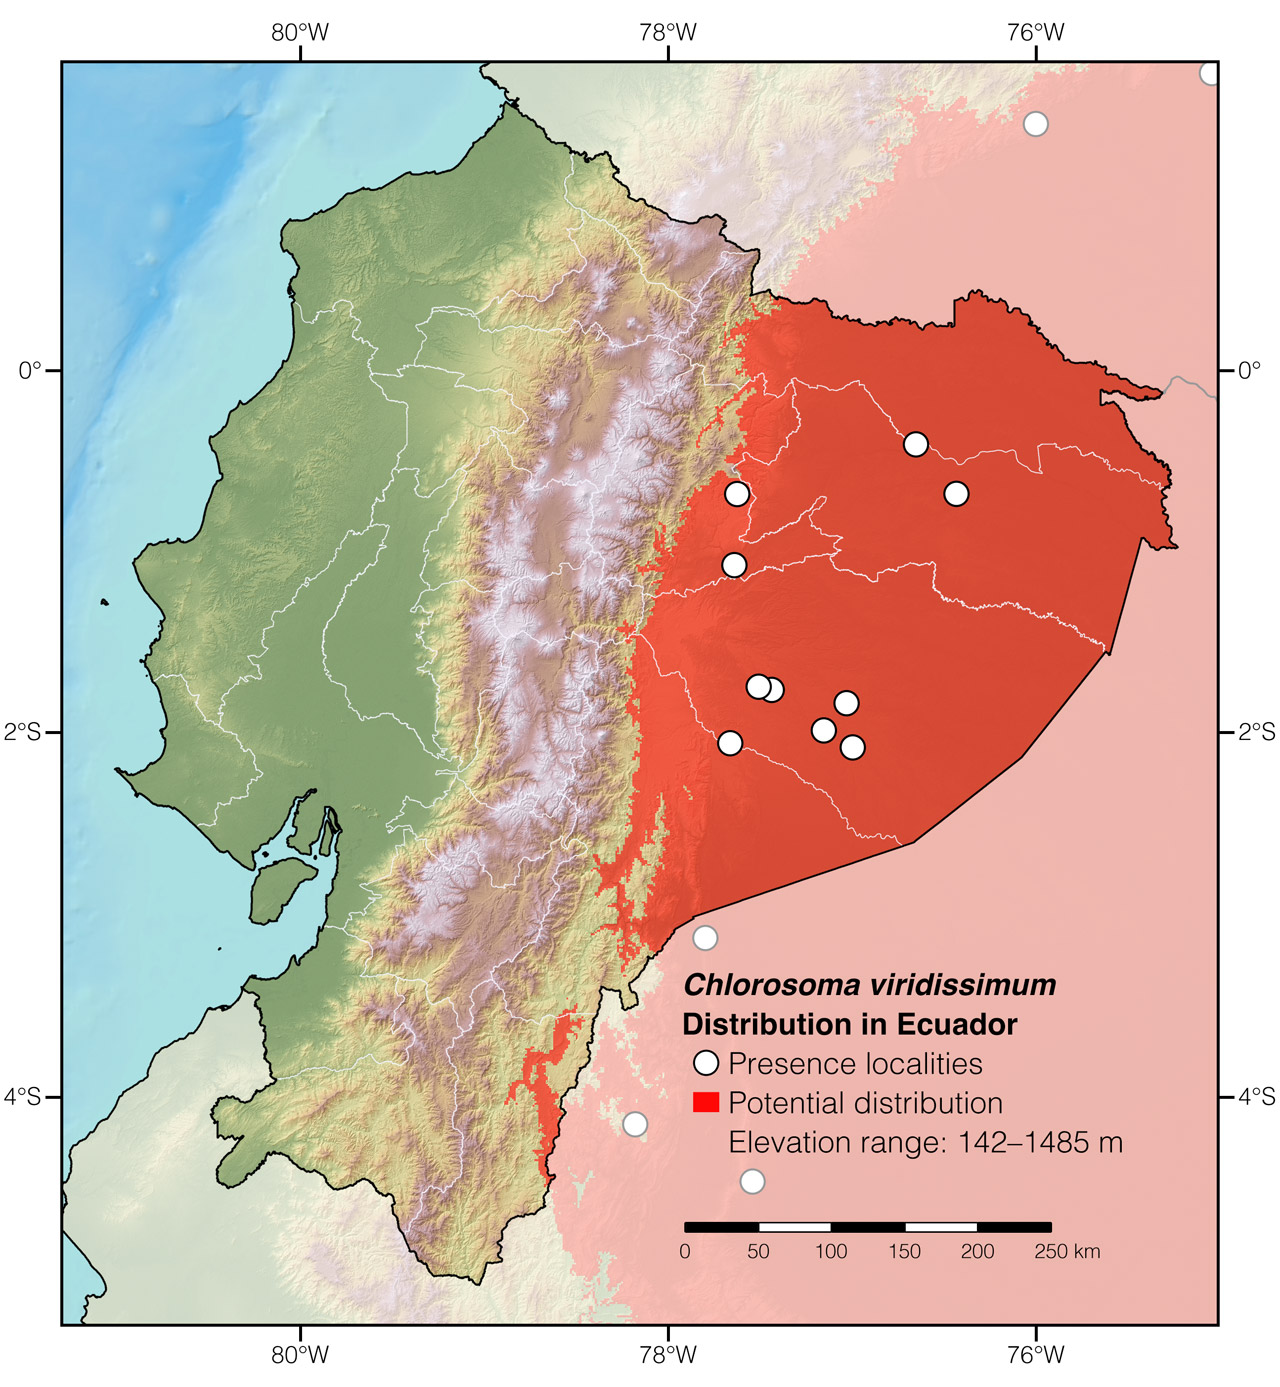 Distribution of Chlorosoma viridissimum in Ecuador